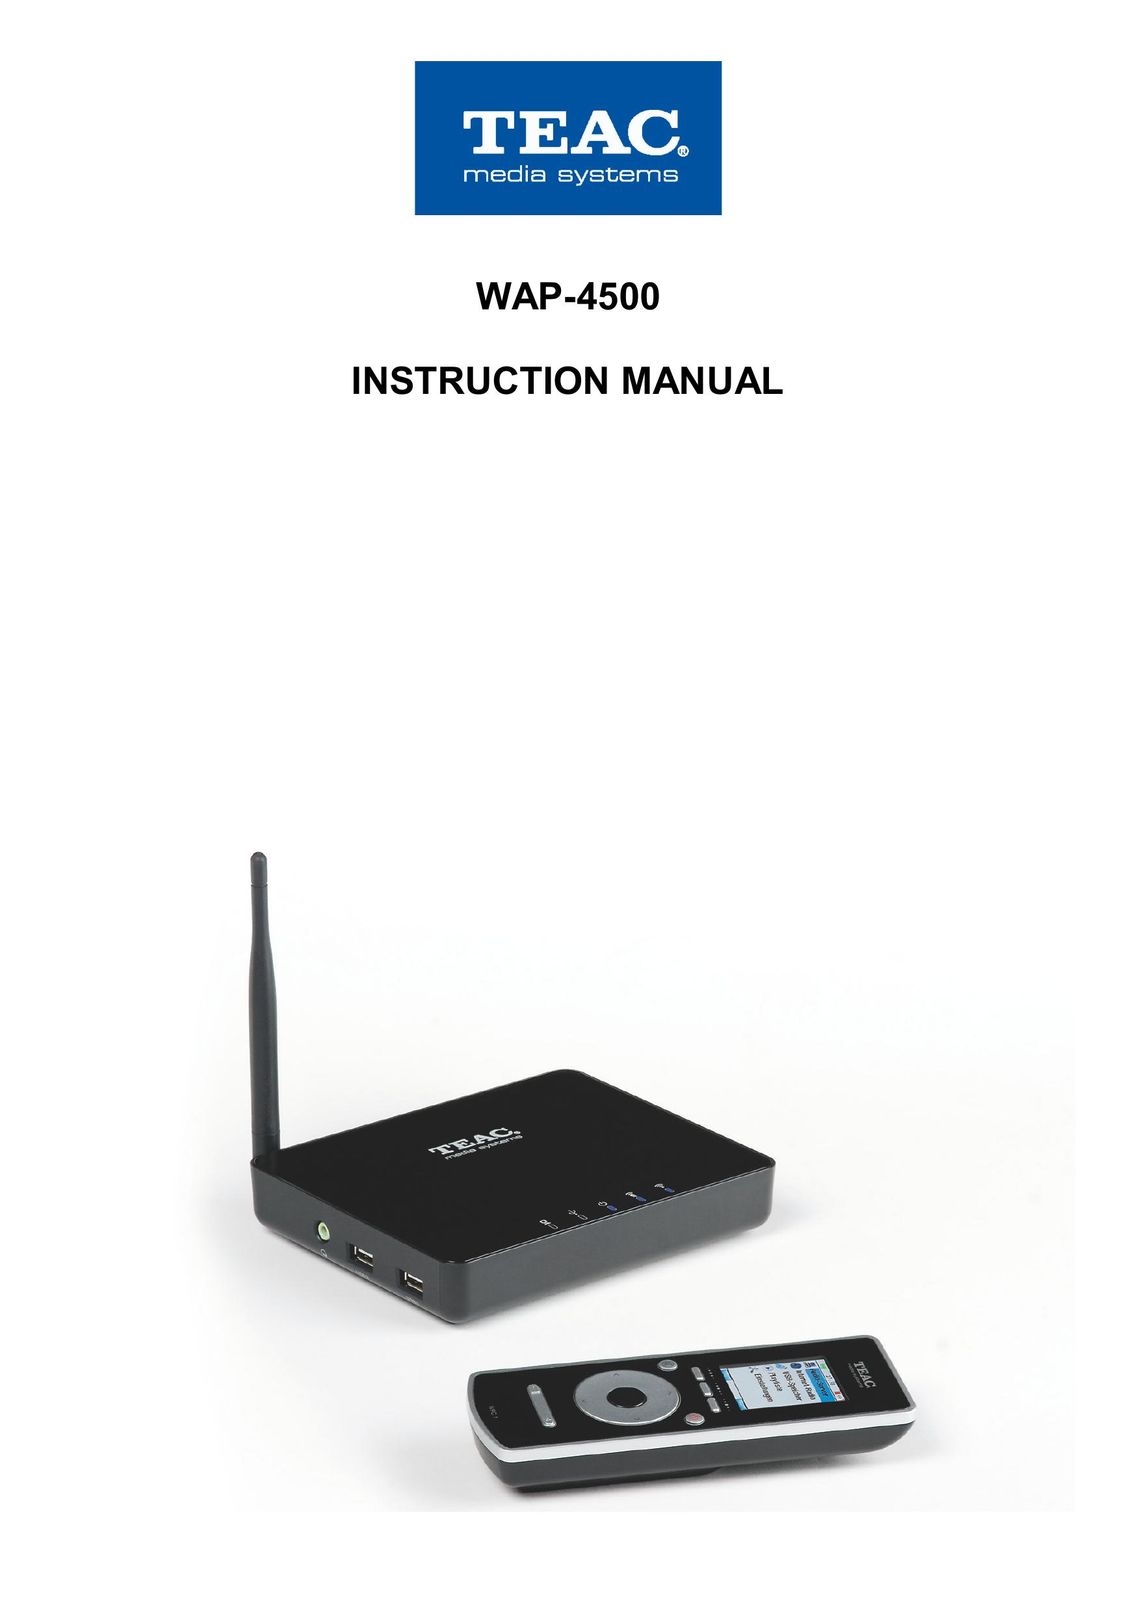 Teac WAP-4500 MP3 Player User Manual